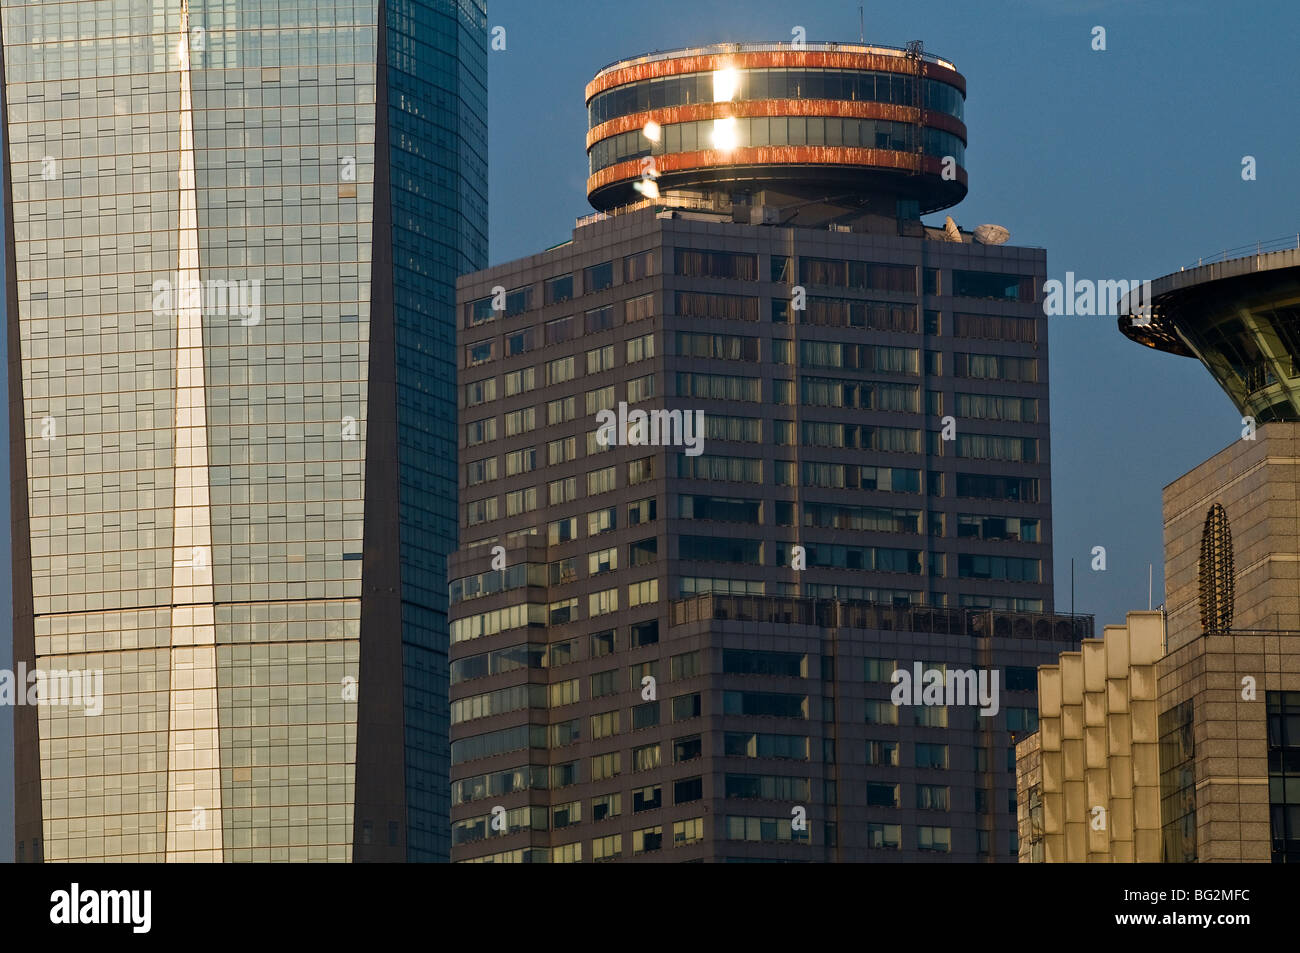 Downtown Nanjing. Grattacieli moderni sono in costruzione e che dominano lo skyline. Foto Stock